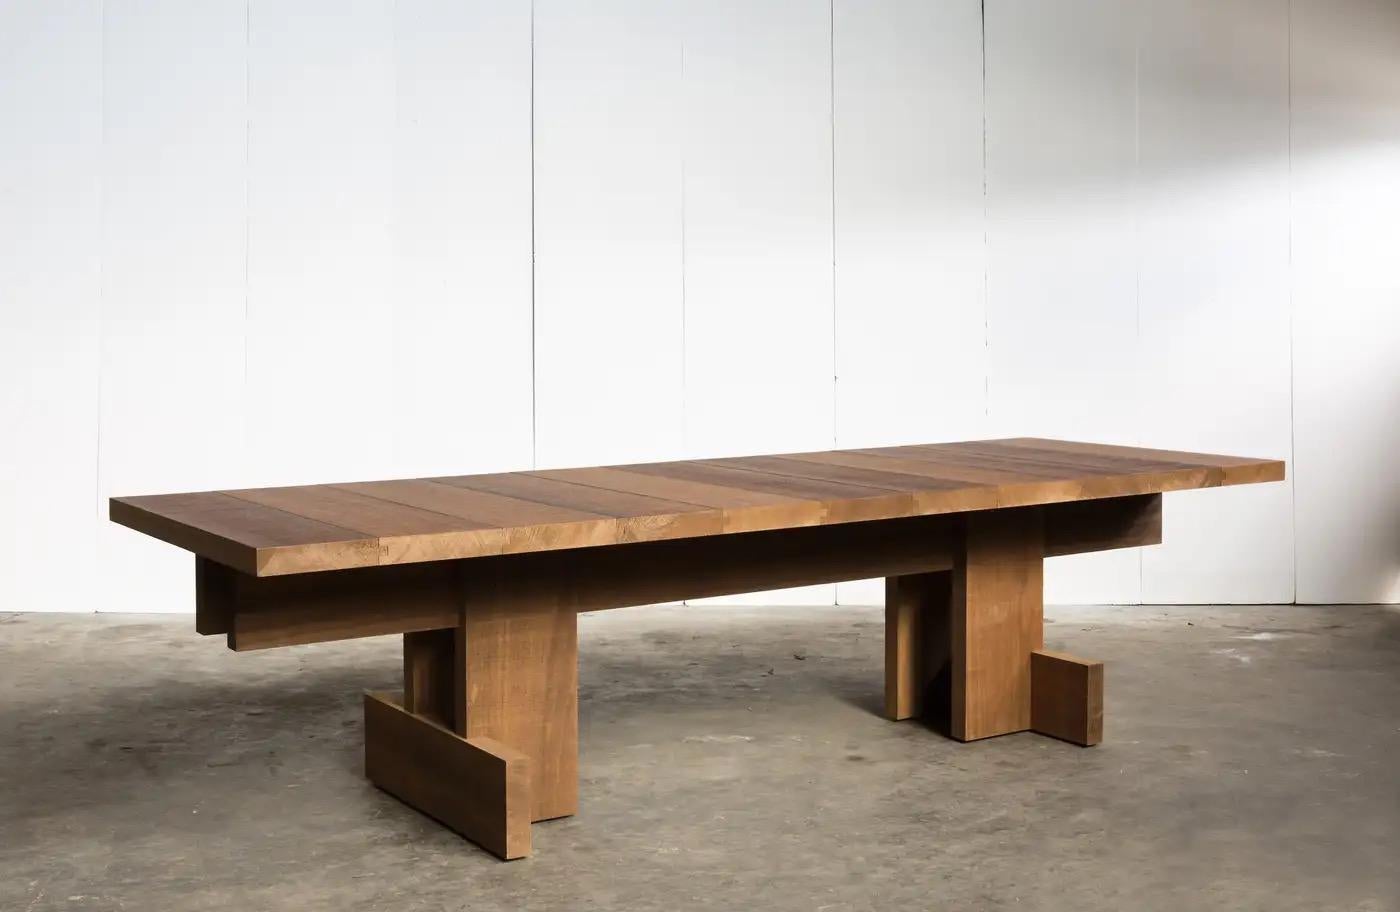 Cette table basse conserve l'allure impressionnante de notre table de salle à manger de style brutaliste fabriquée en Belgique. Le même charme, la simplicité pure et les bords nets, laissant place à l'appréciation de l'aspect fort et naturel du bois